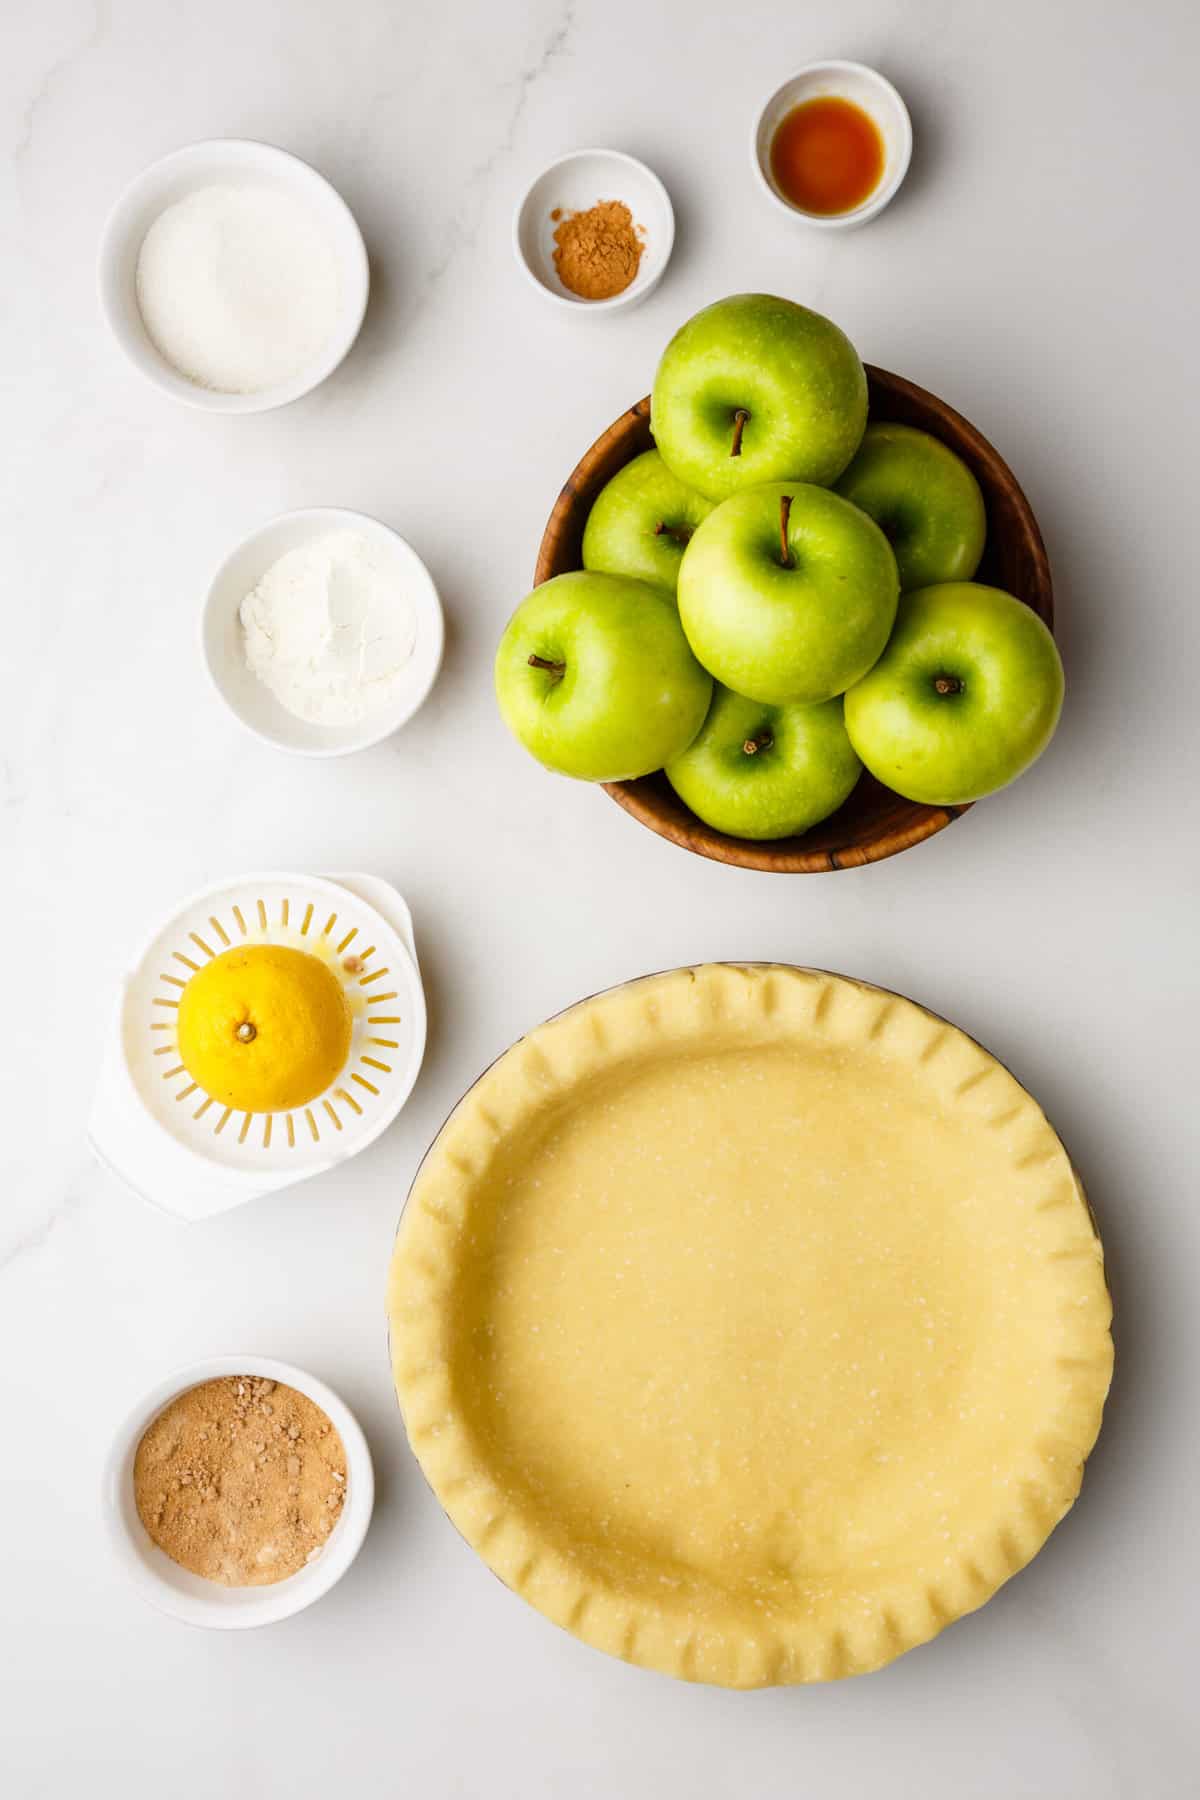 ingredients to make dutch apple pie